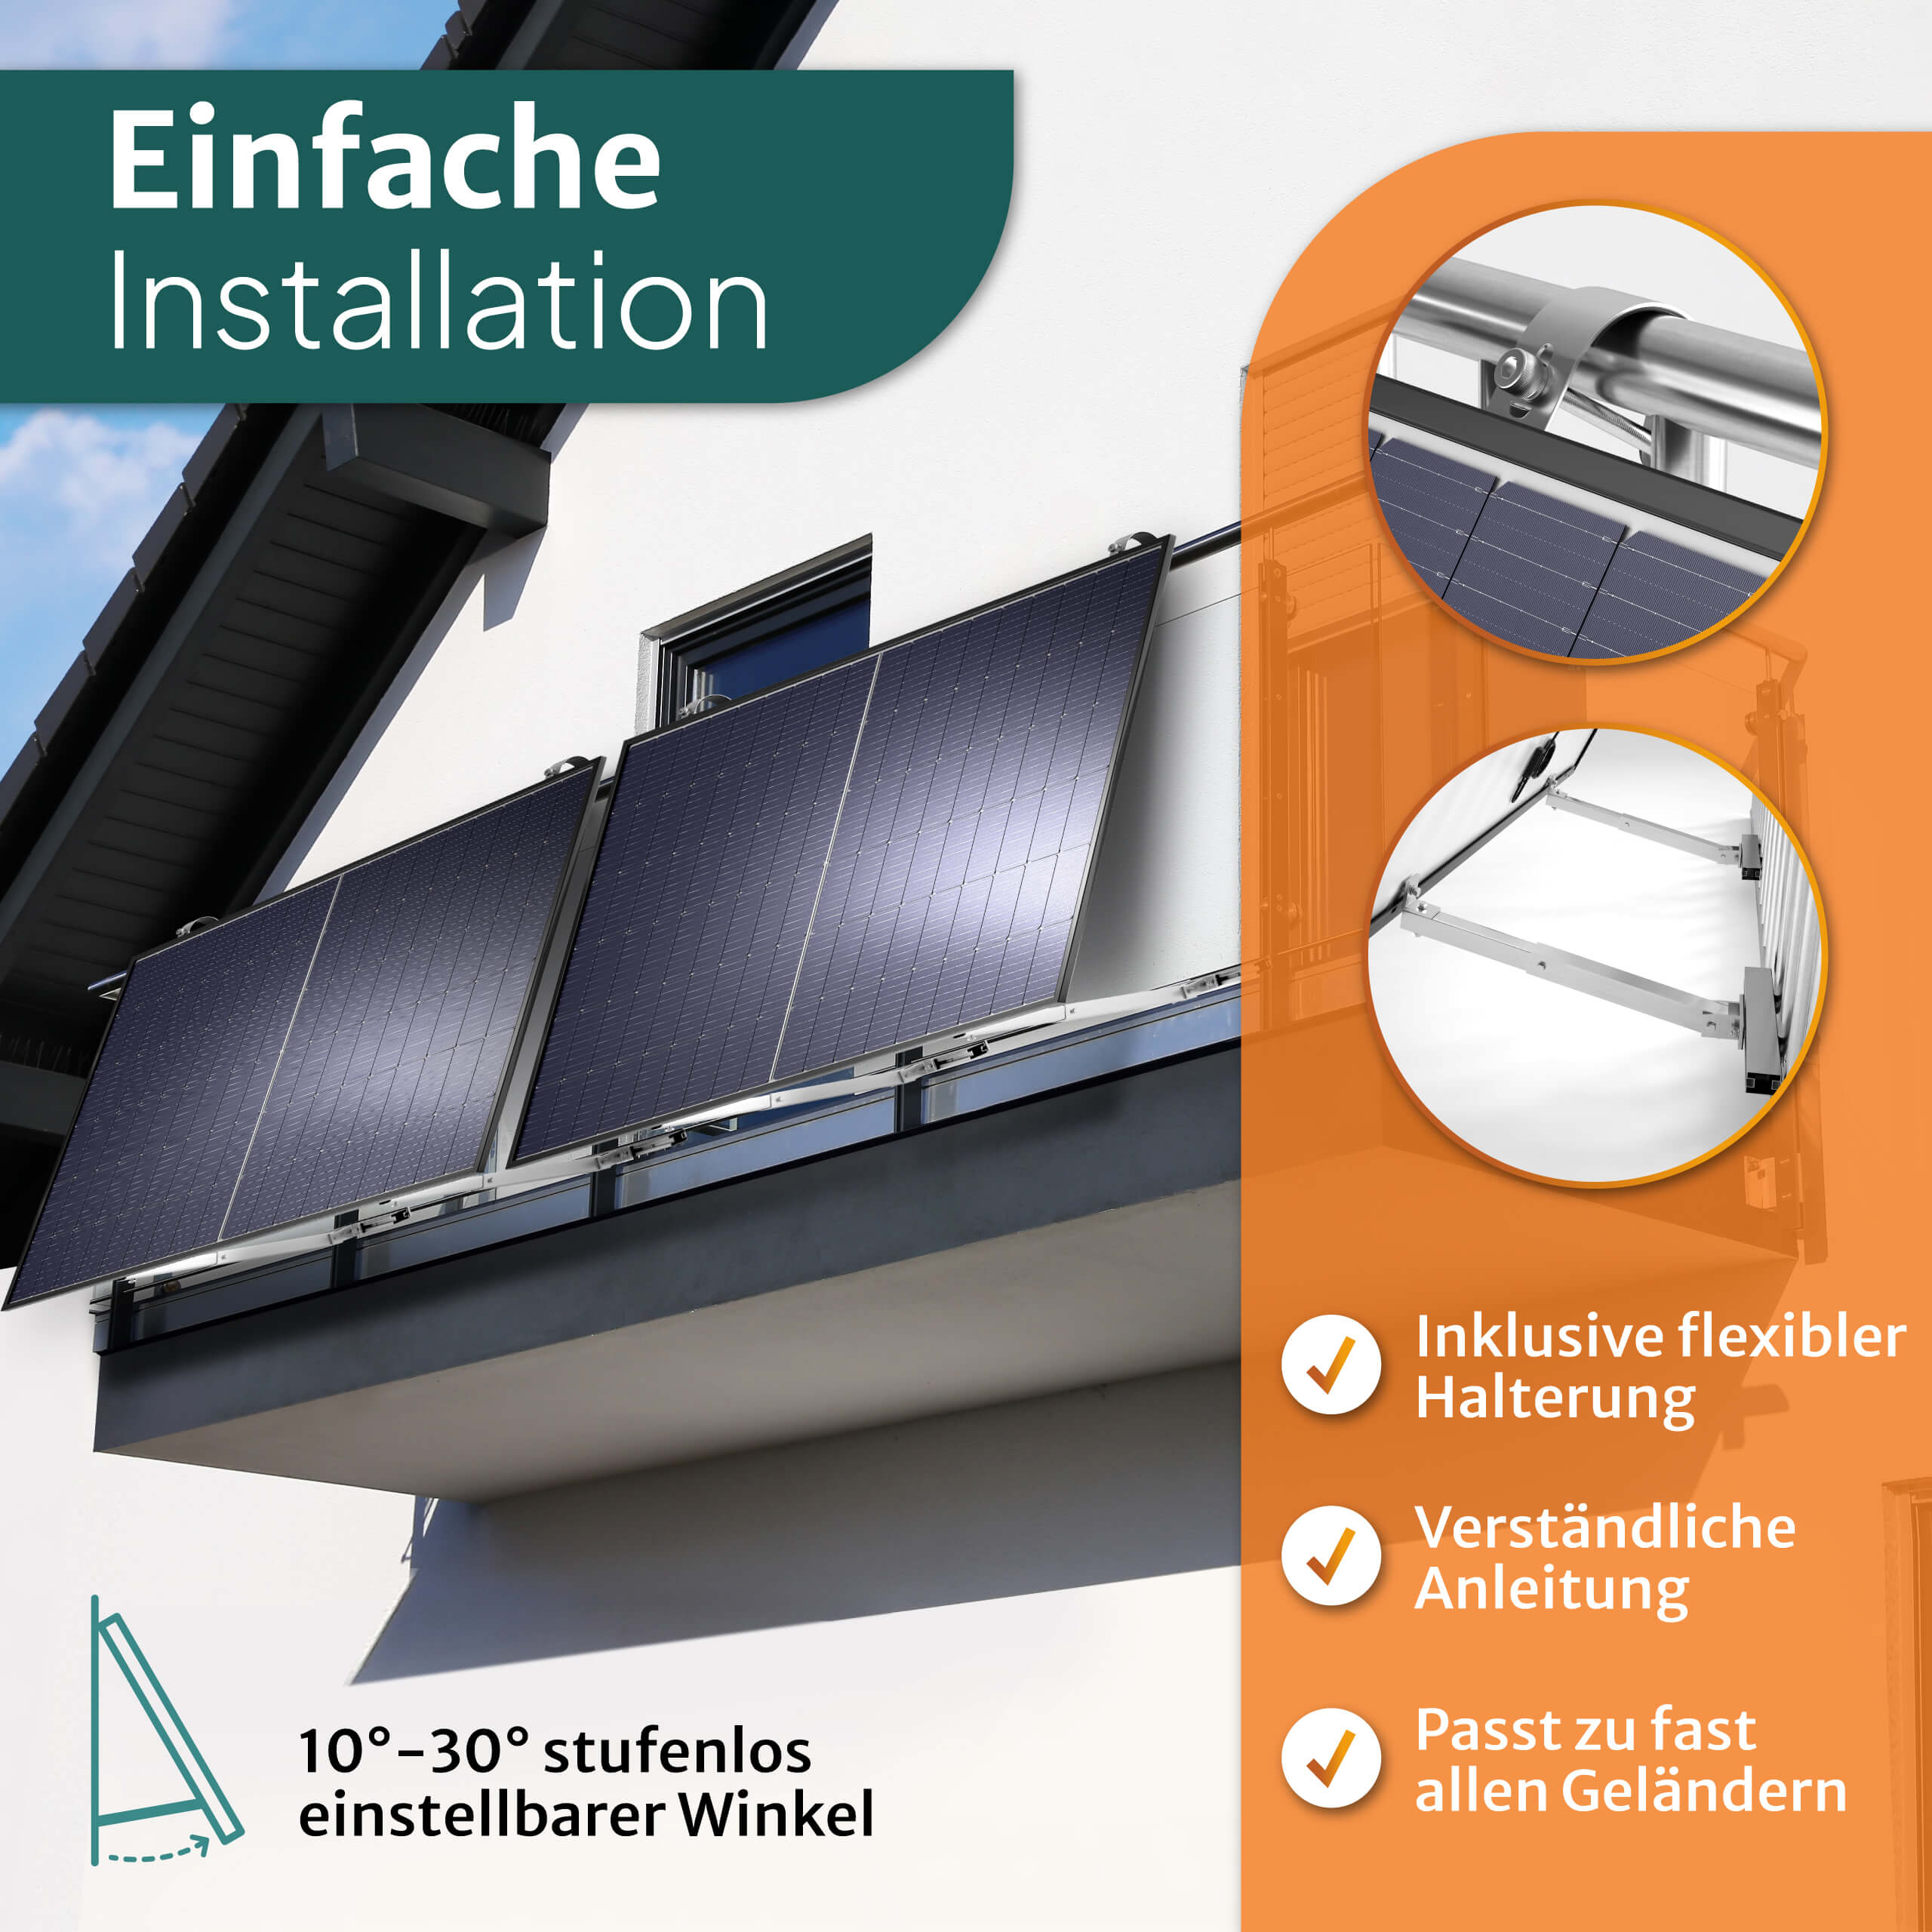 Geländer-Halterung 5m 1kWh Speicher mit inkl. - 850W Balkon-Solaranlage Kabel Batterie STROMGANZEINFACH